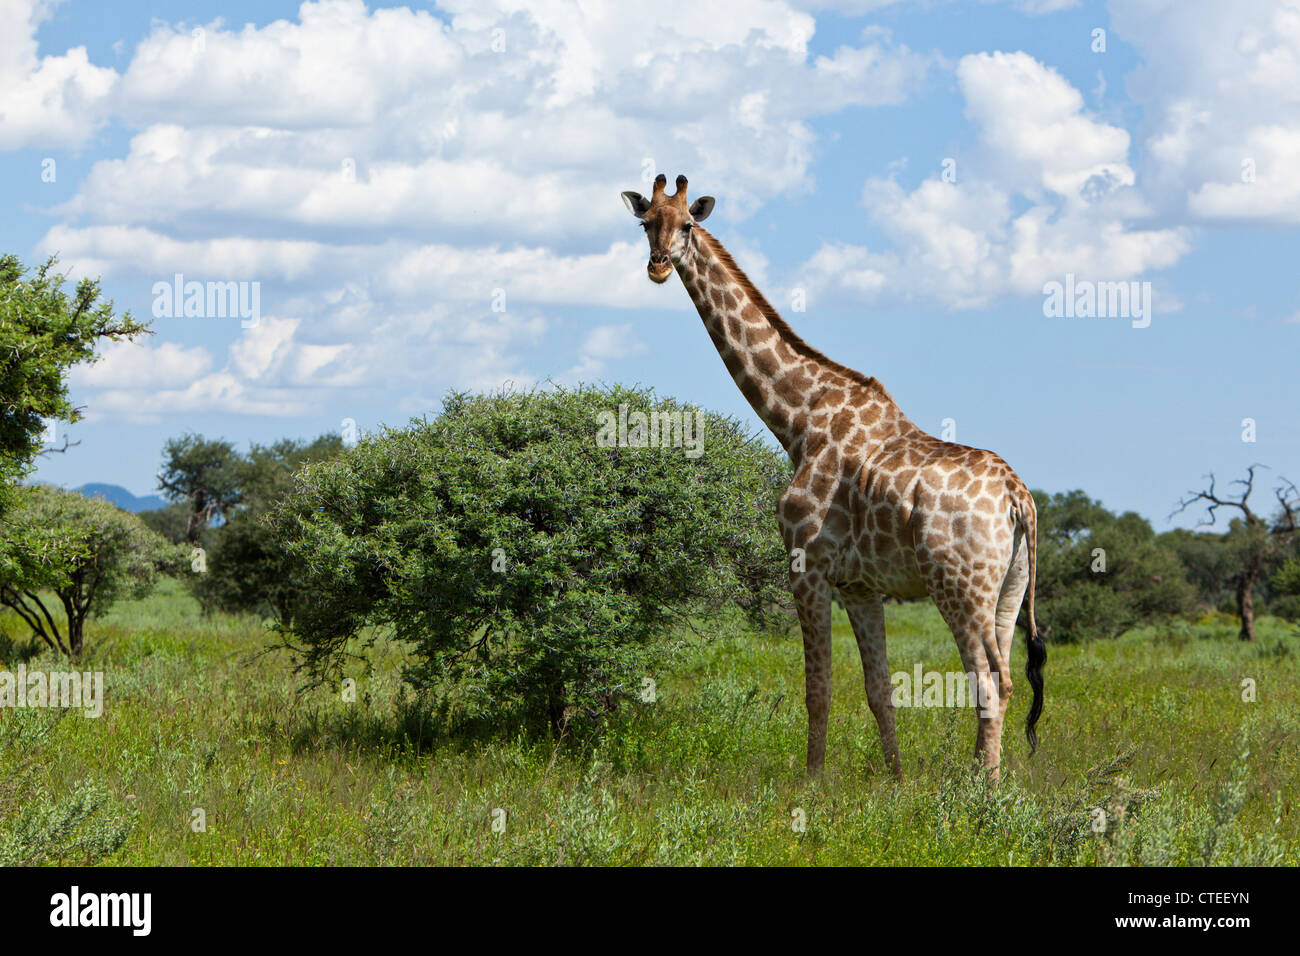 Girafe, Giraffa camelopardalis, Namibie Banque D'Images